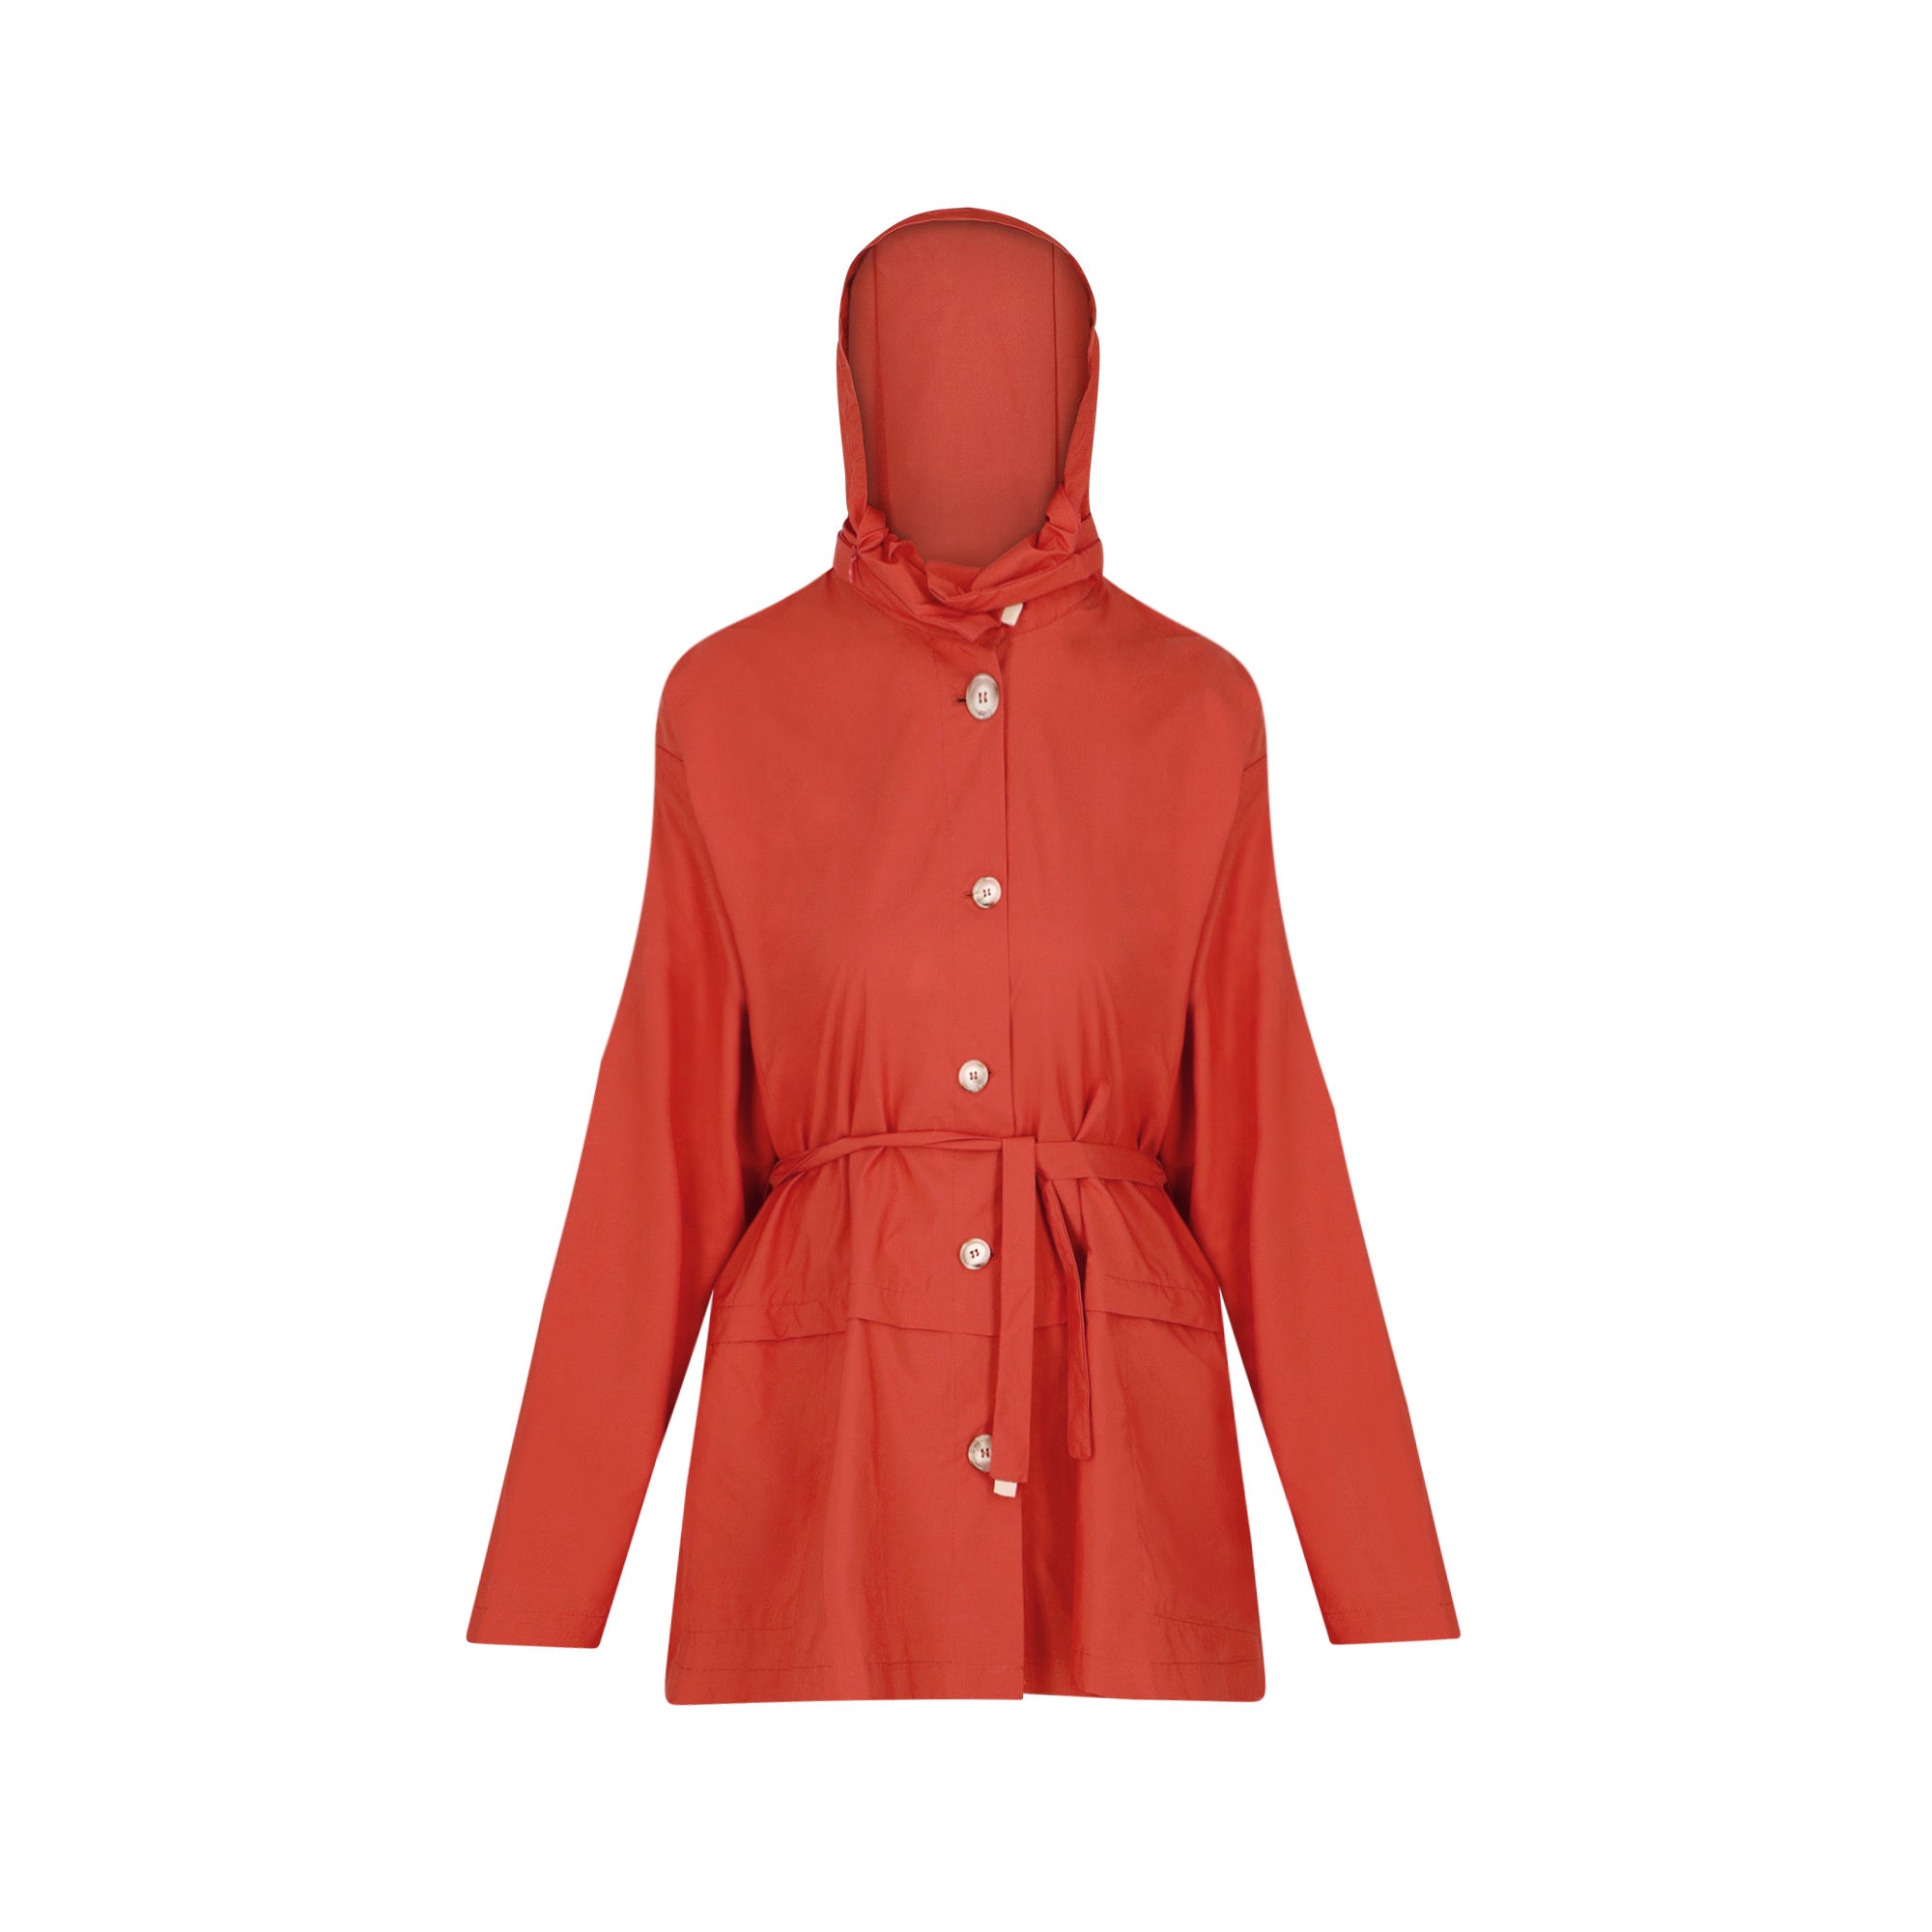 Bise raincoat - Orange color - front view